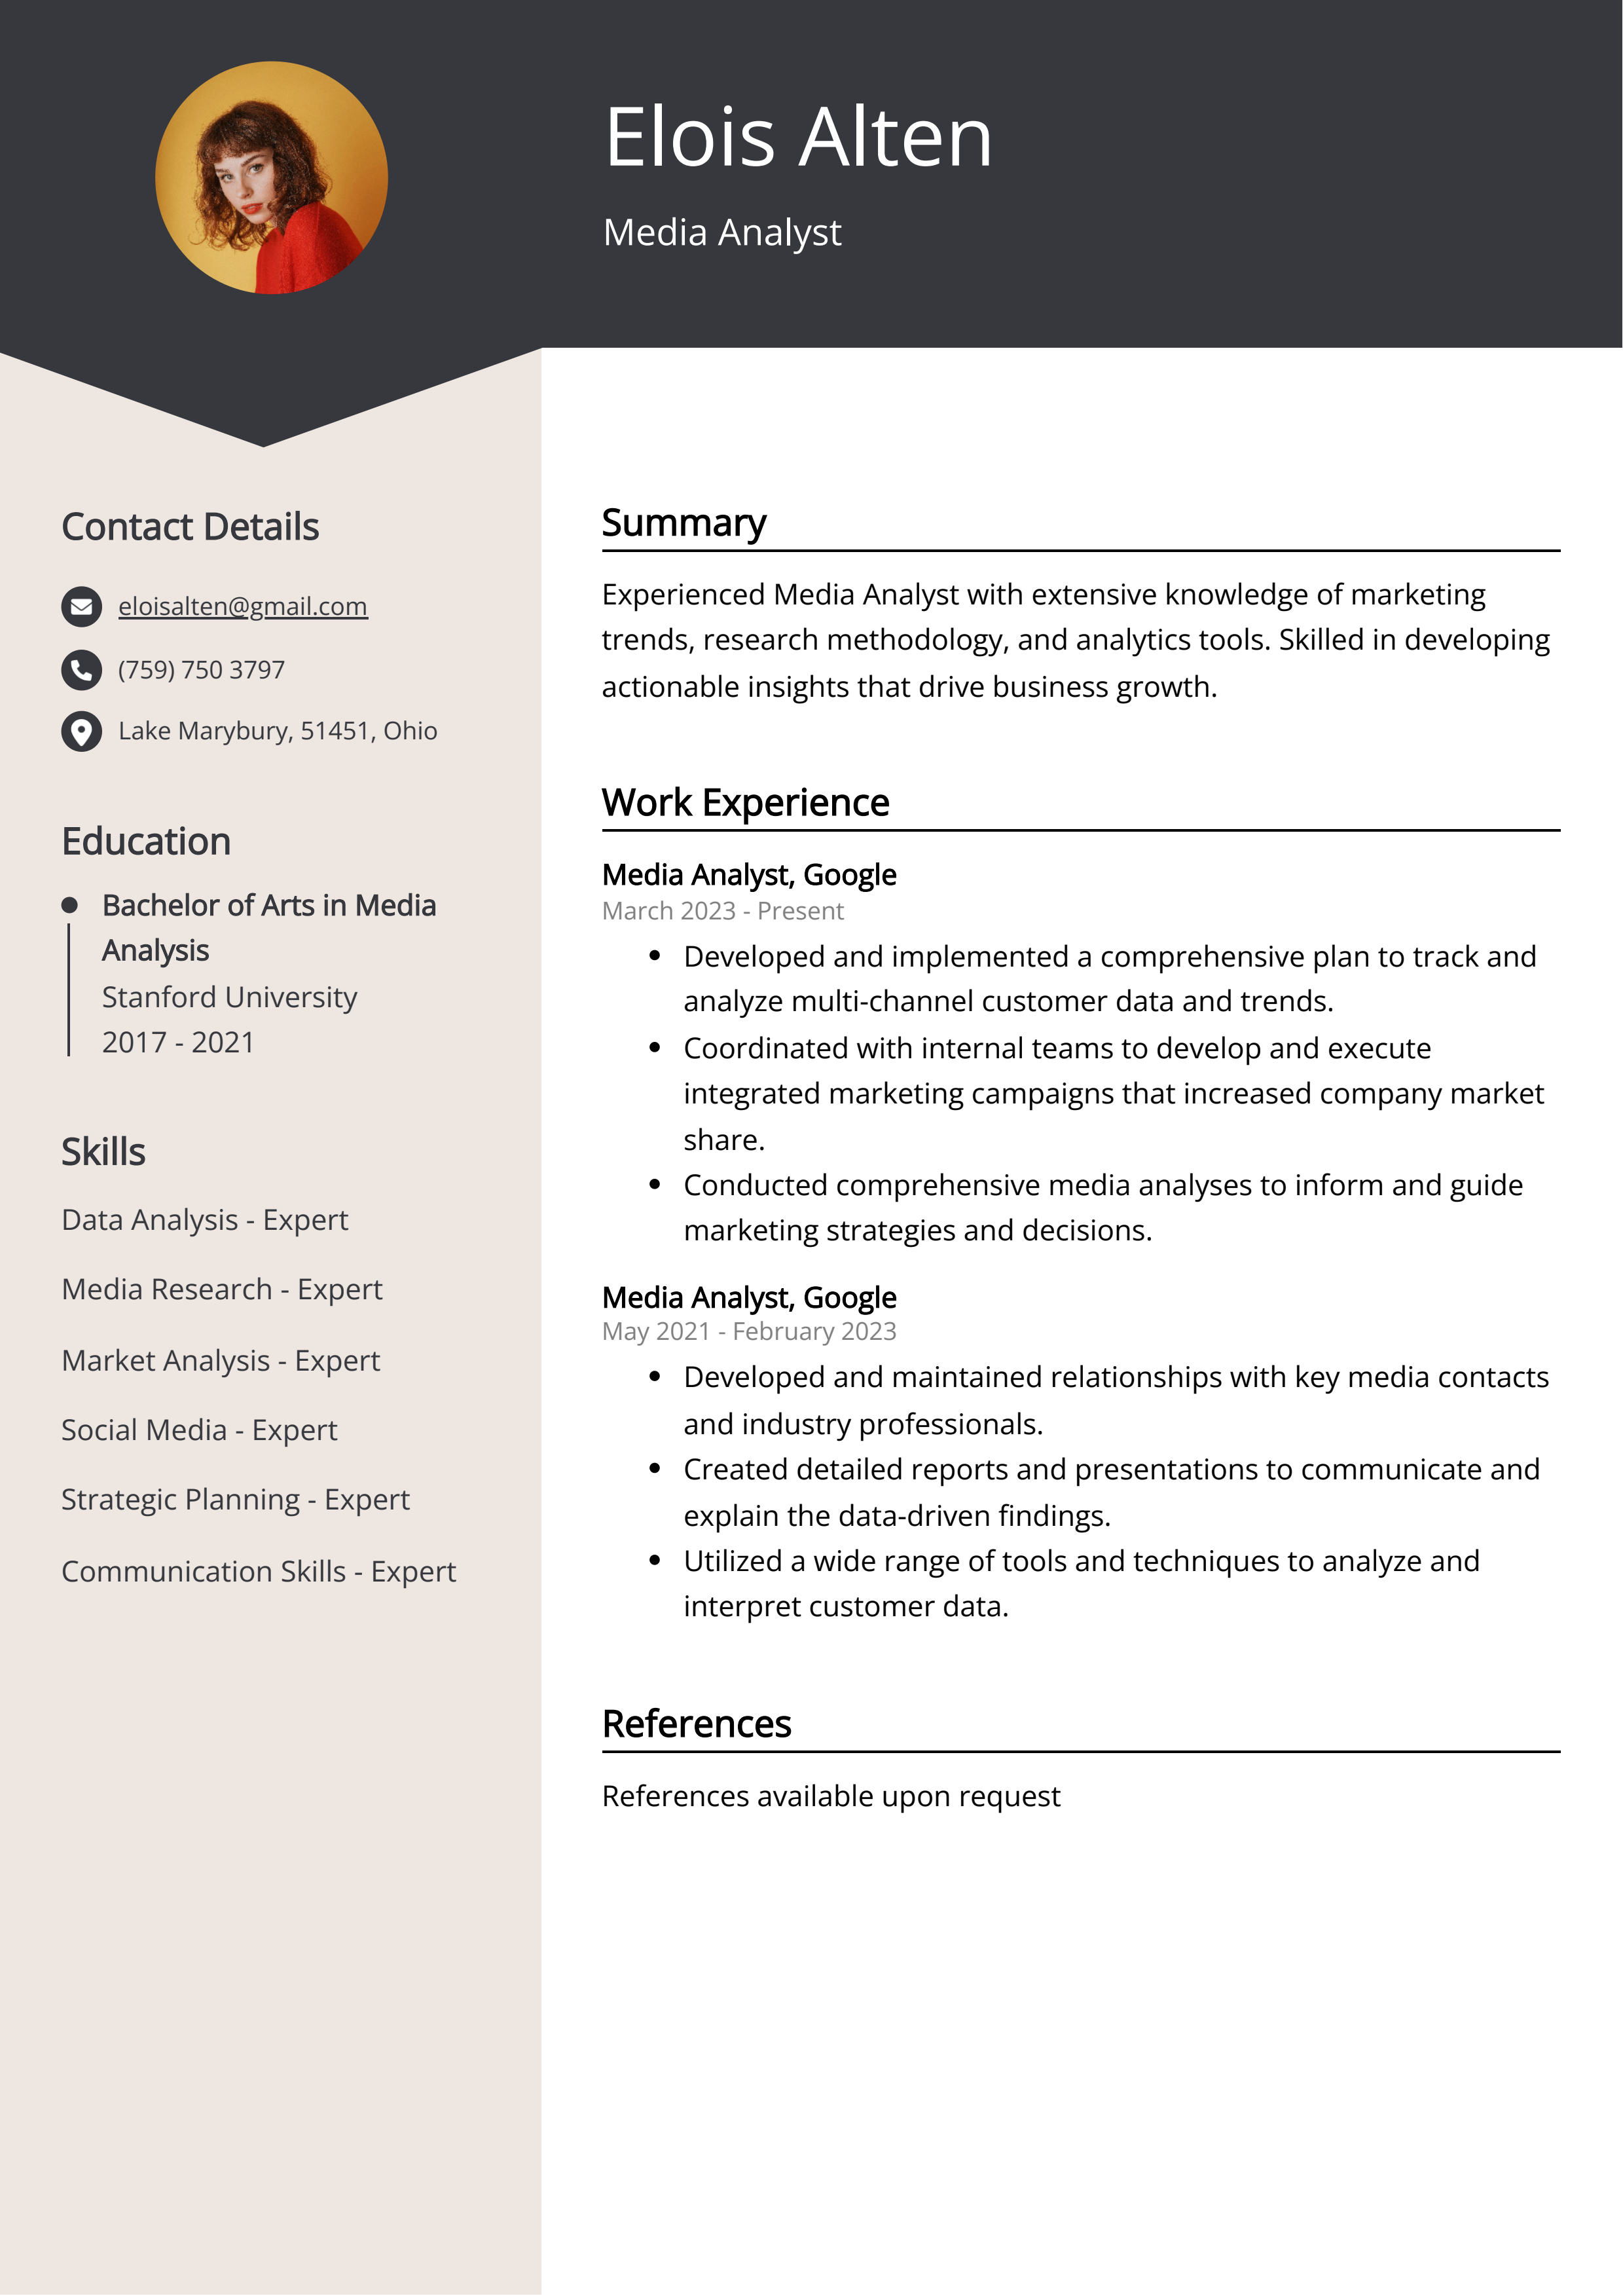 Media Analyst CV: Job Description Sample Guide